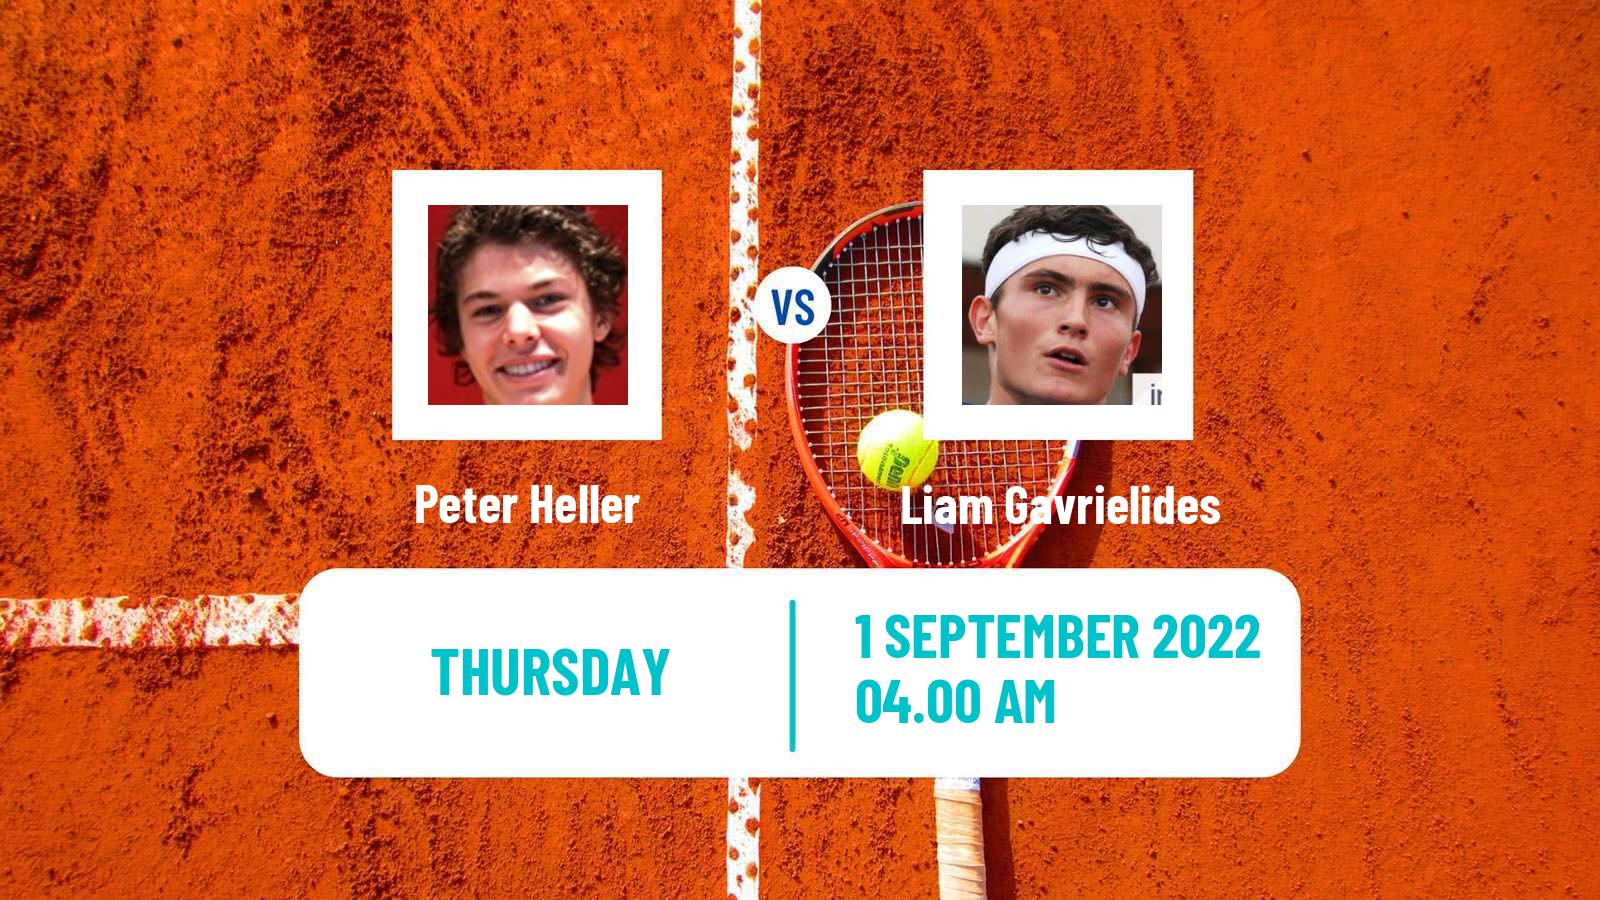 Tennis ITF Tournaments Peter Heller - Liam Gavrielides